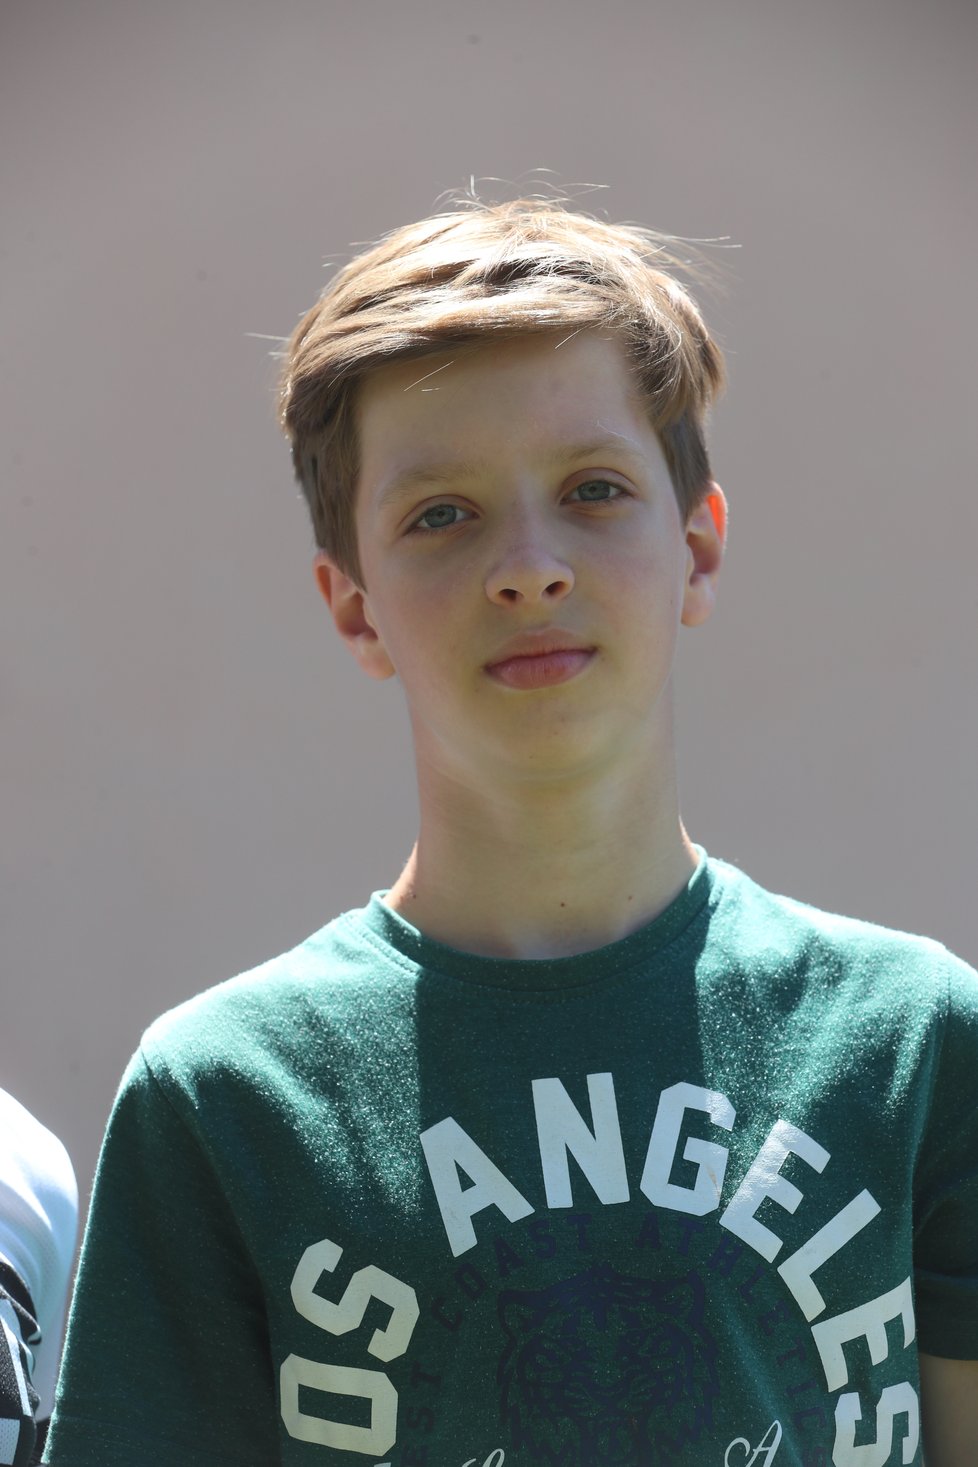 Modrooký Anton (13) o sobě říká, že je sportovec. Doma chodí plavat, rád maluje, učí se češtinu, polštinu a španělštinu. A rád by se stal programátorem.